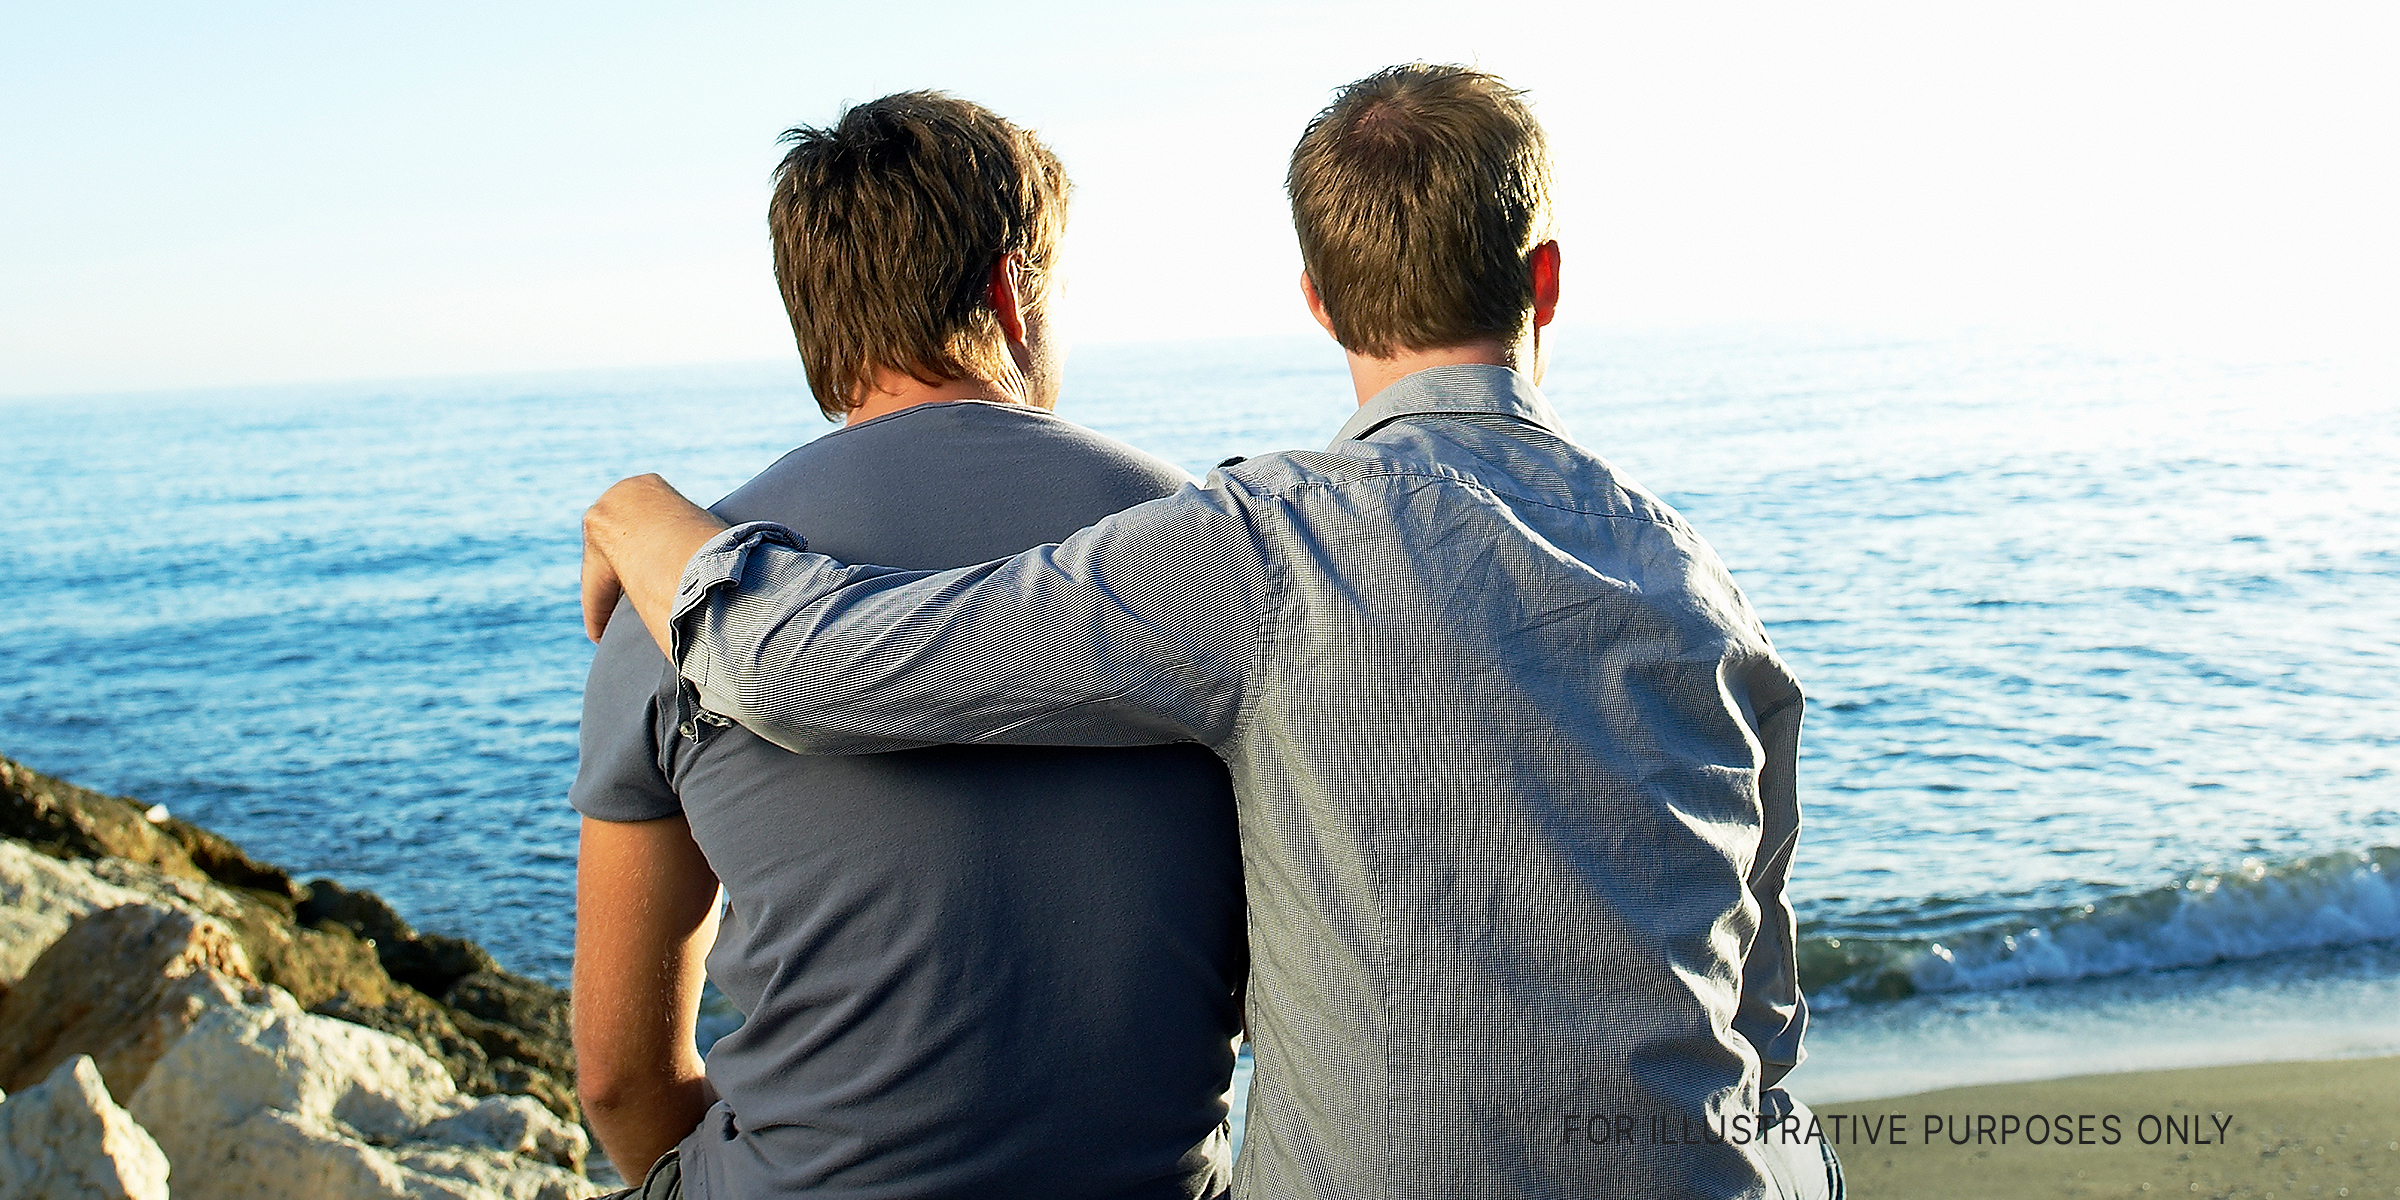 Deux hommes regardant une vue tandis que l'un embrasse l'autre | Source : Getty Images